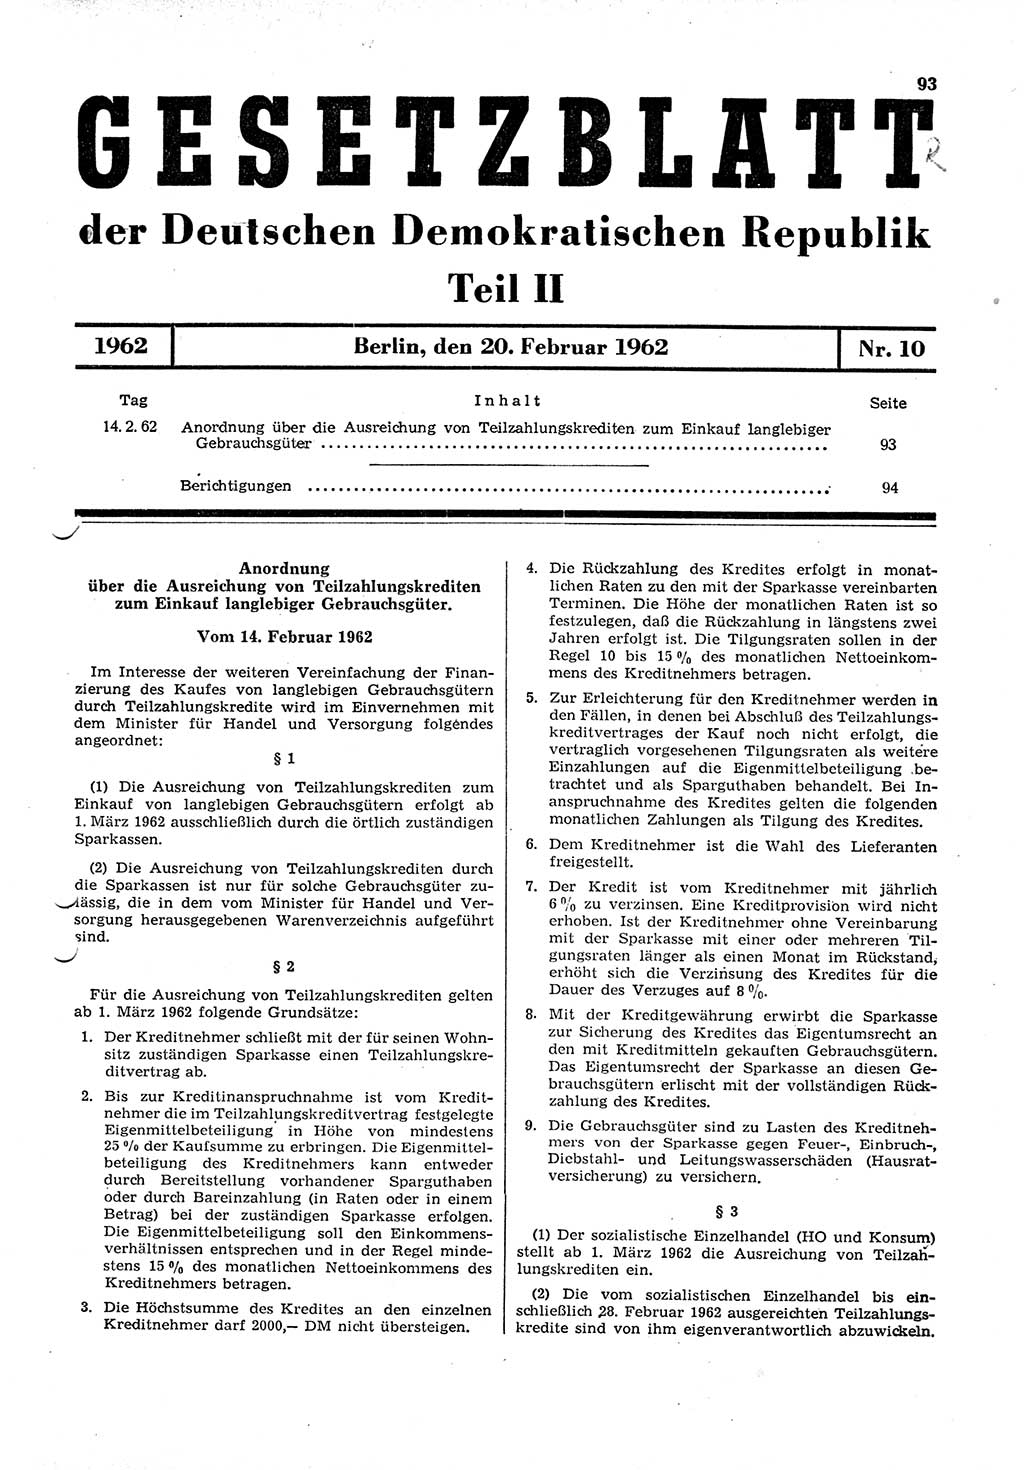 Gesetzblatt (GBl.) der Deutschen Demokratischen Republik (DDR) Teil ⅠⅠ 1962, Seite 93 (GBl. DDR ⅠⅠ 1962, S. 93)